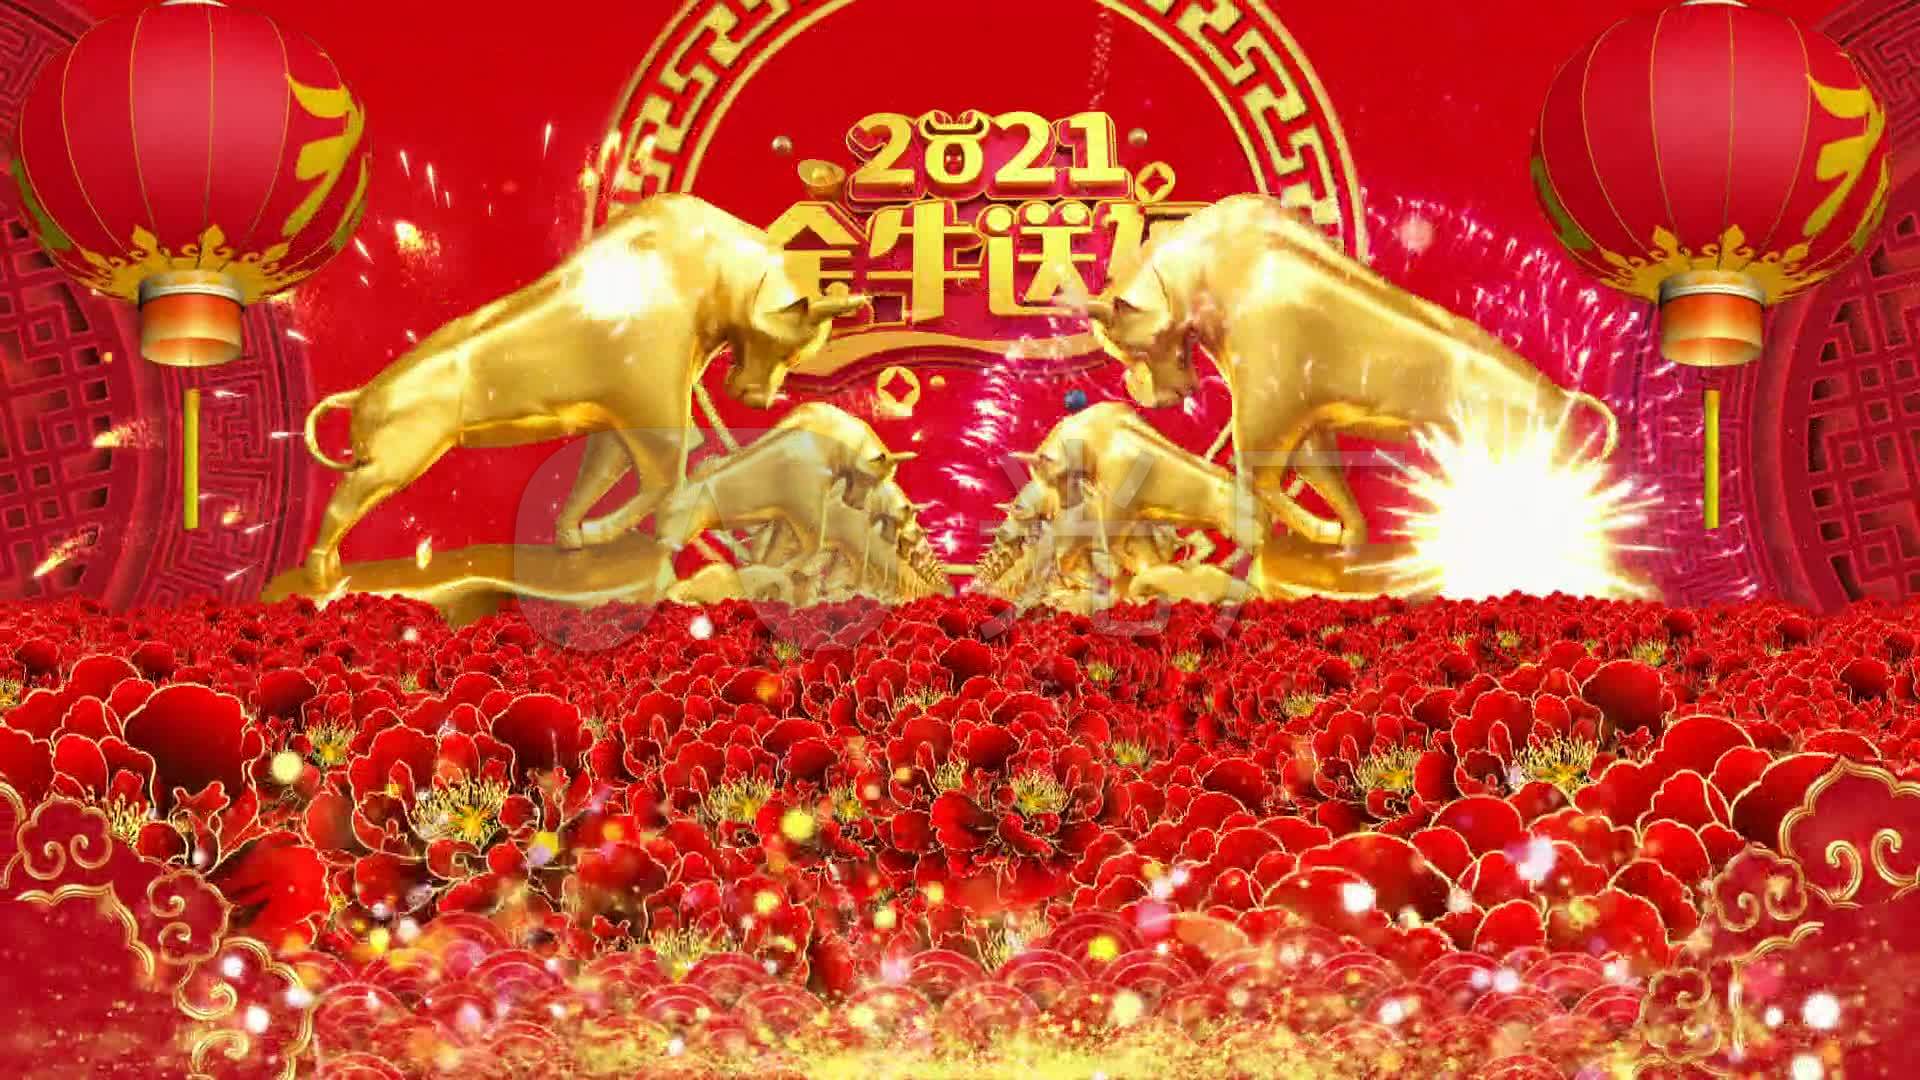 视频素材 舞台背景 中国风背景 2021牛年金牛送福 来自视频原始文件或